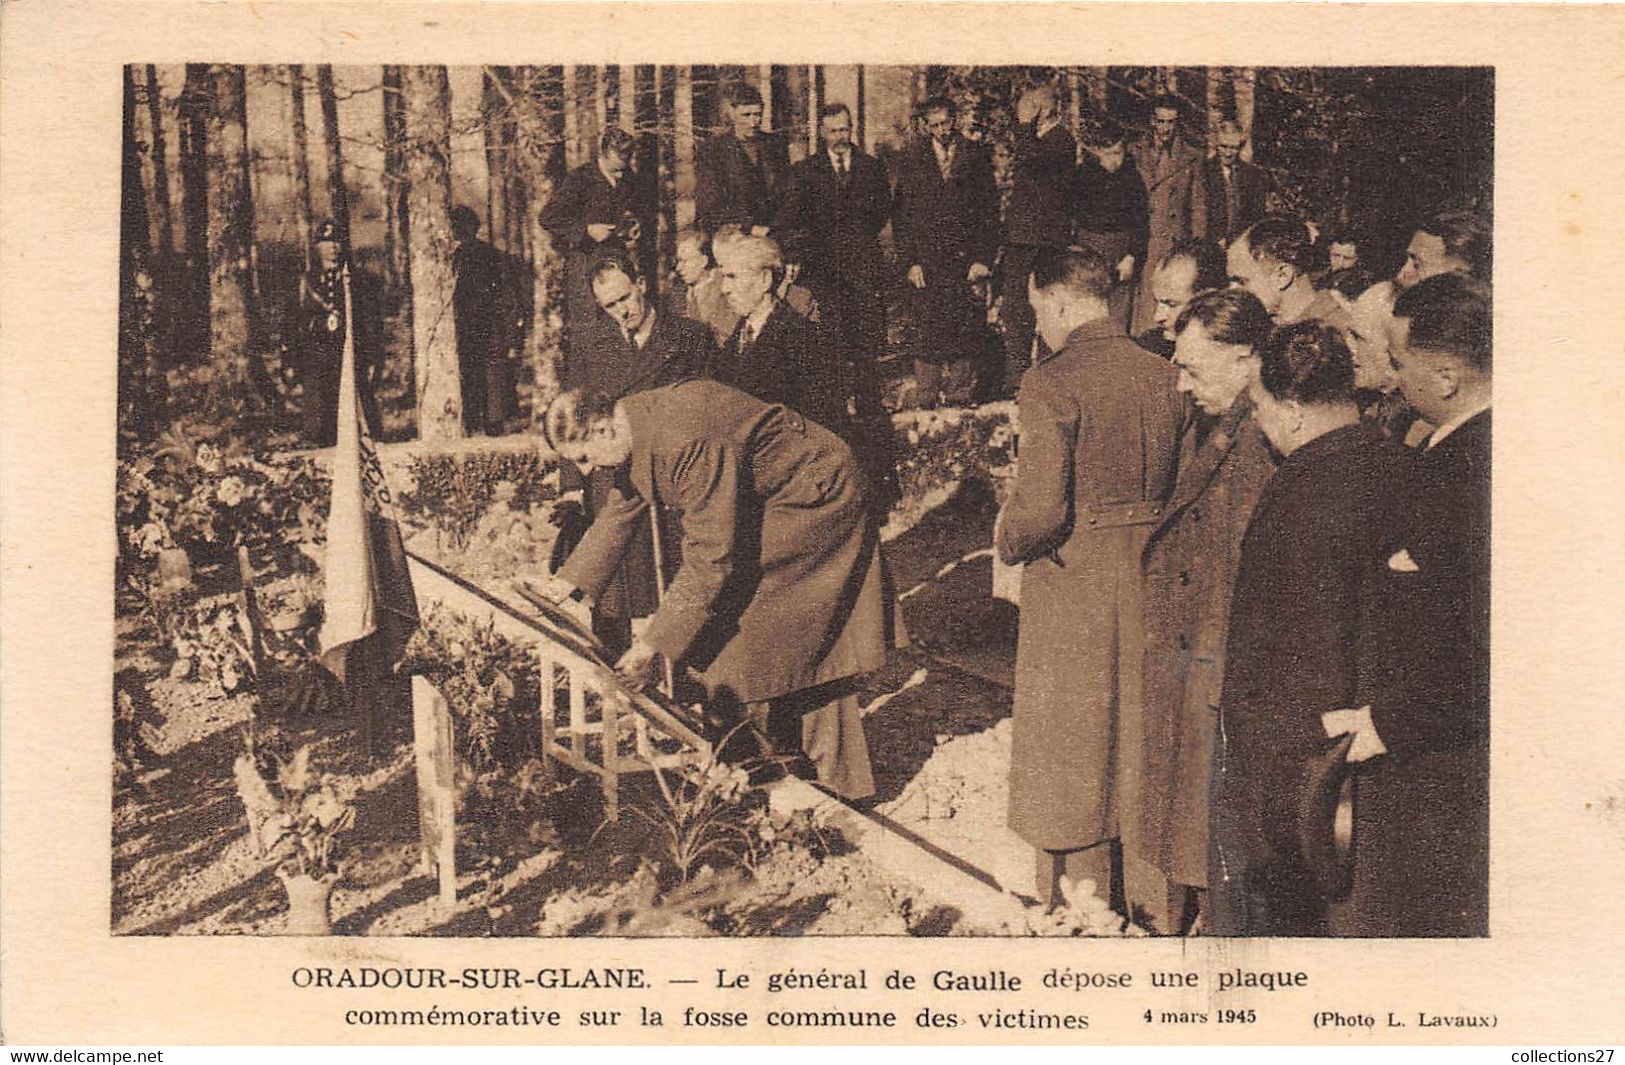 87-ORADOUR-SUR-GLANE- LE GENERAL DE GAULLE DÉPOSE UN PLAQUE COMMÉMORATIVE SUR LA FOSSE COMMUNE DES VICTIMES 4 MARS 1945 - Oradour Sur Glane